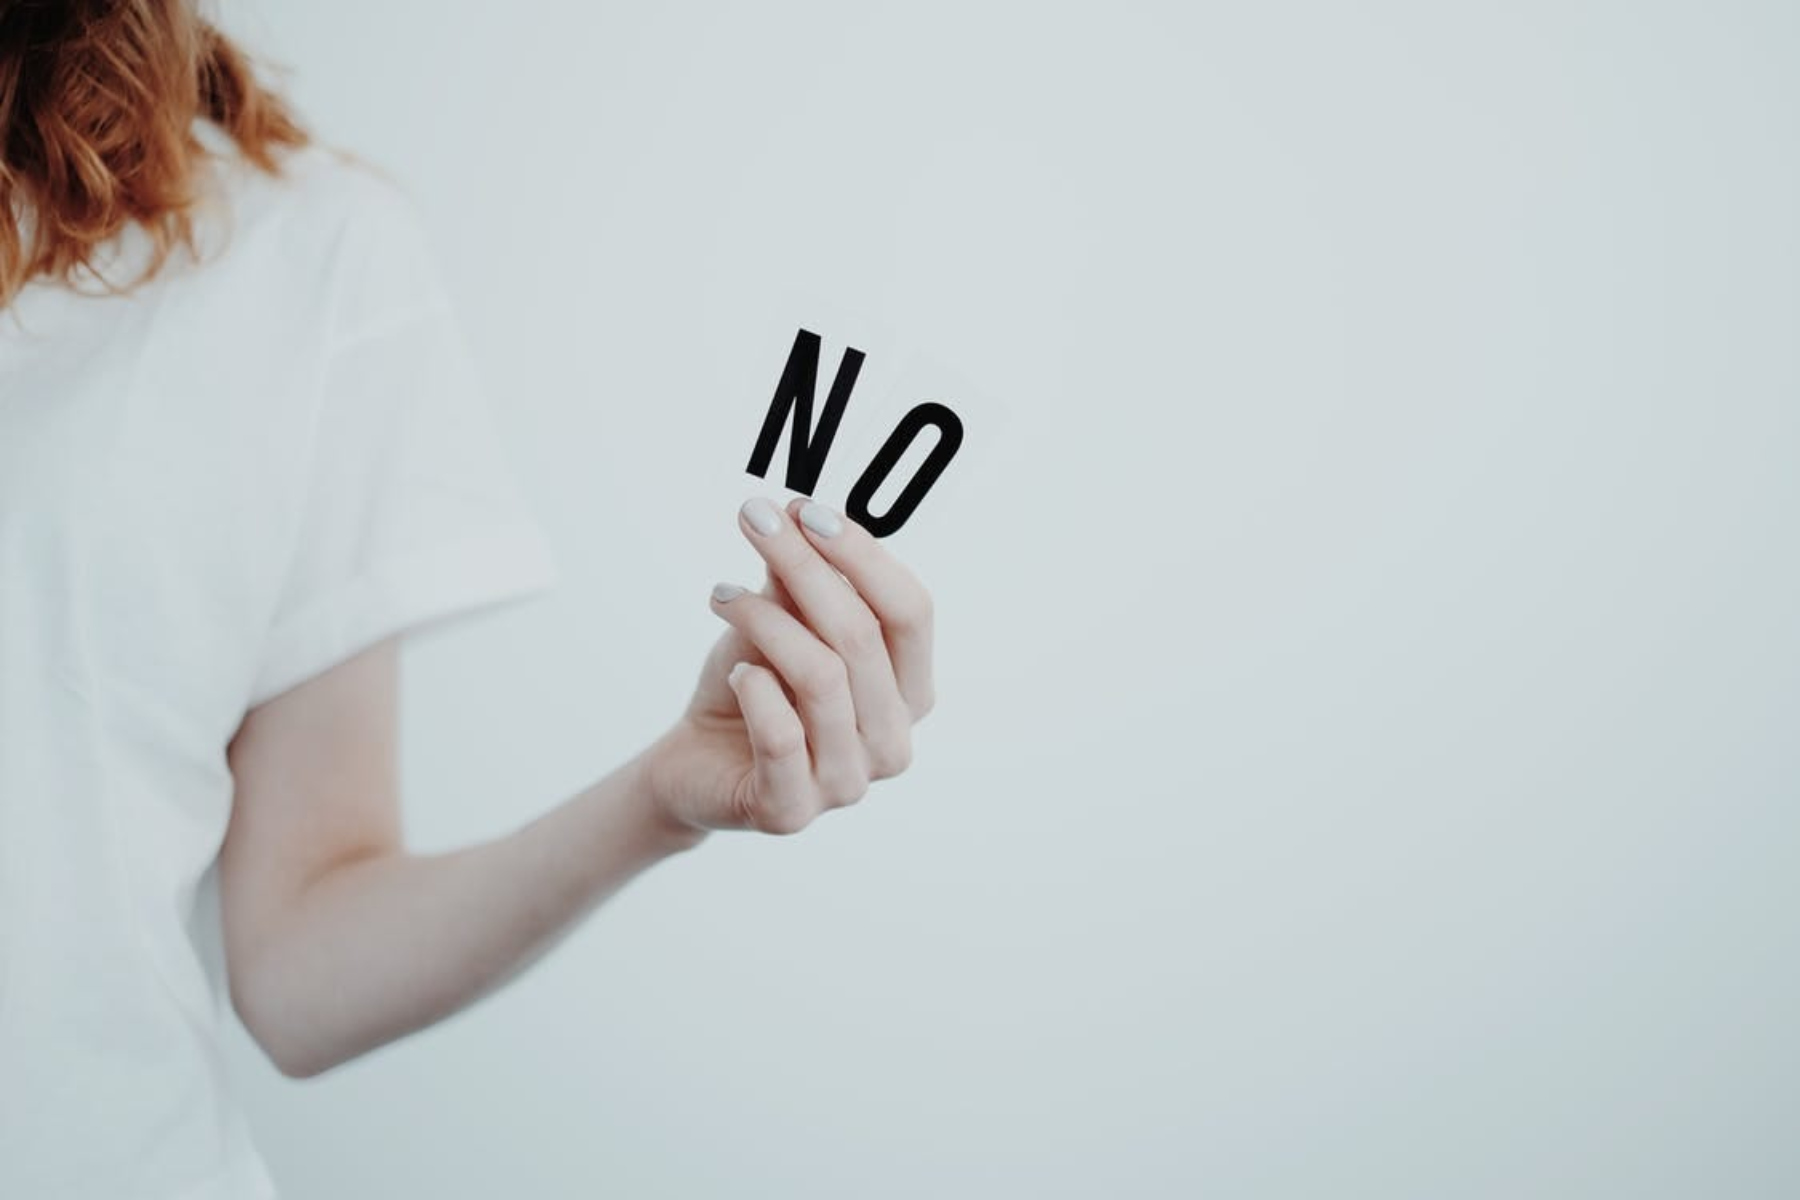 Πείτε “όχι”: Φροντίστε τον εαυτό σας λέγοντας “όχι”